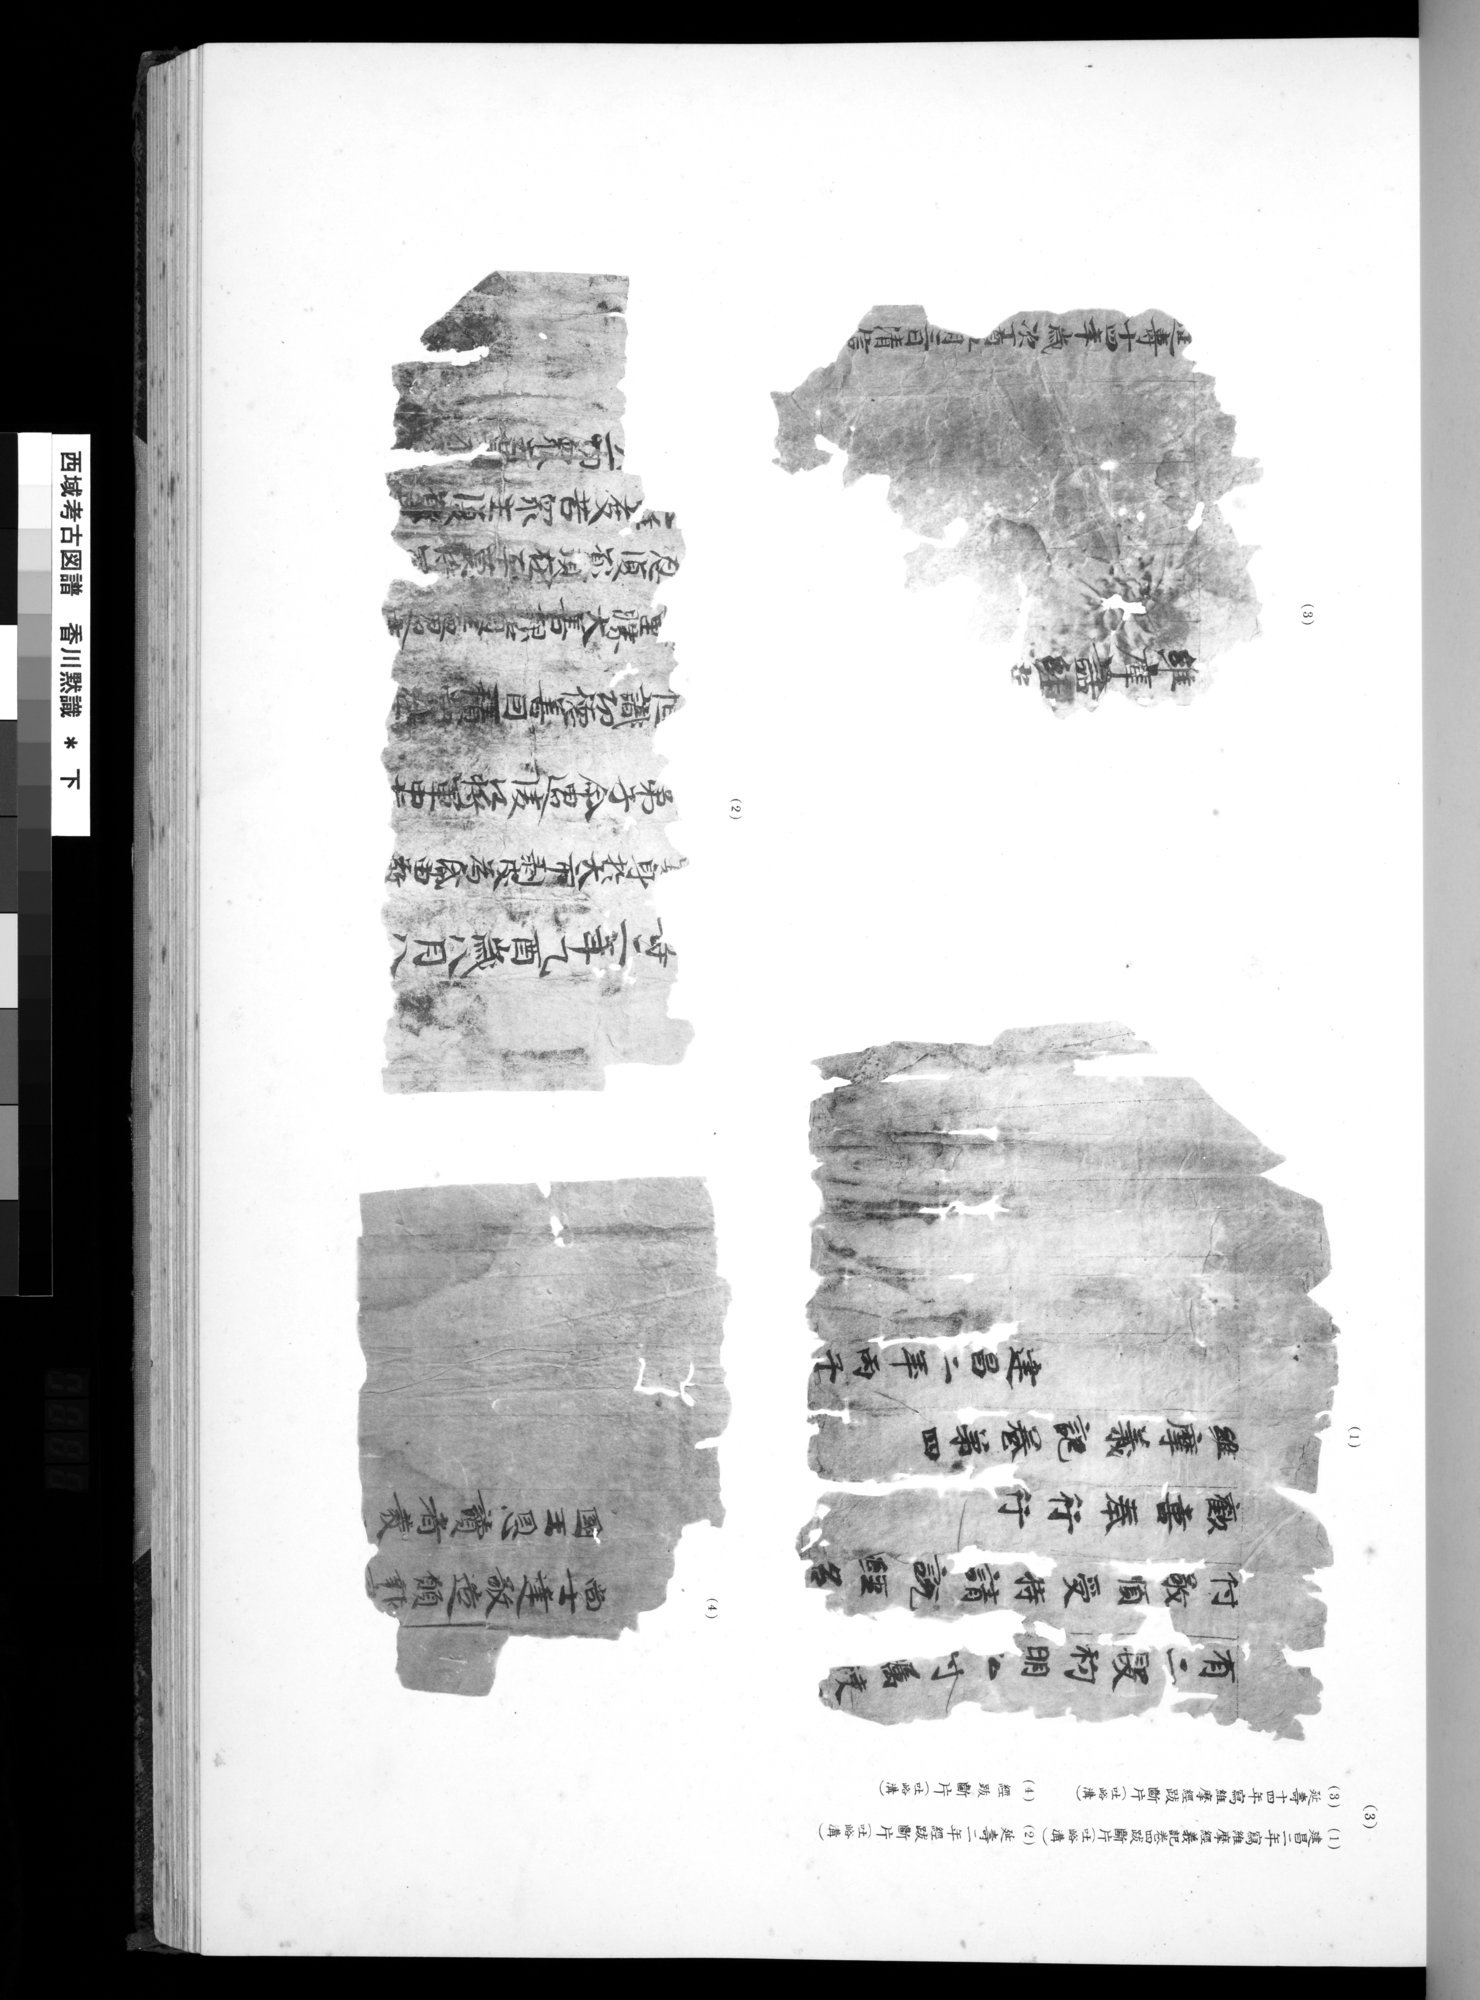 西域考古図譜 : vol.2 / 159 ページ（白黒高解像度画像）